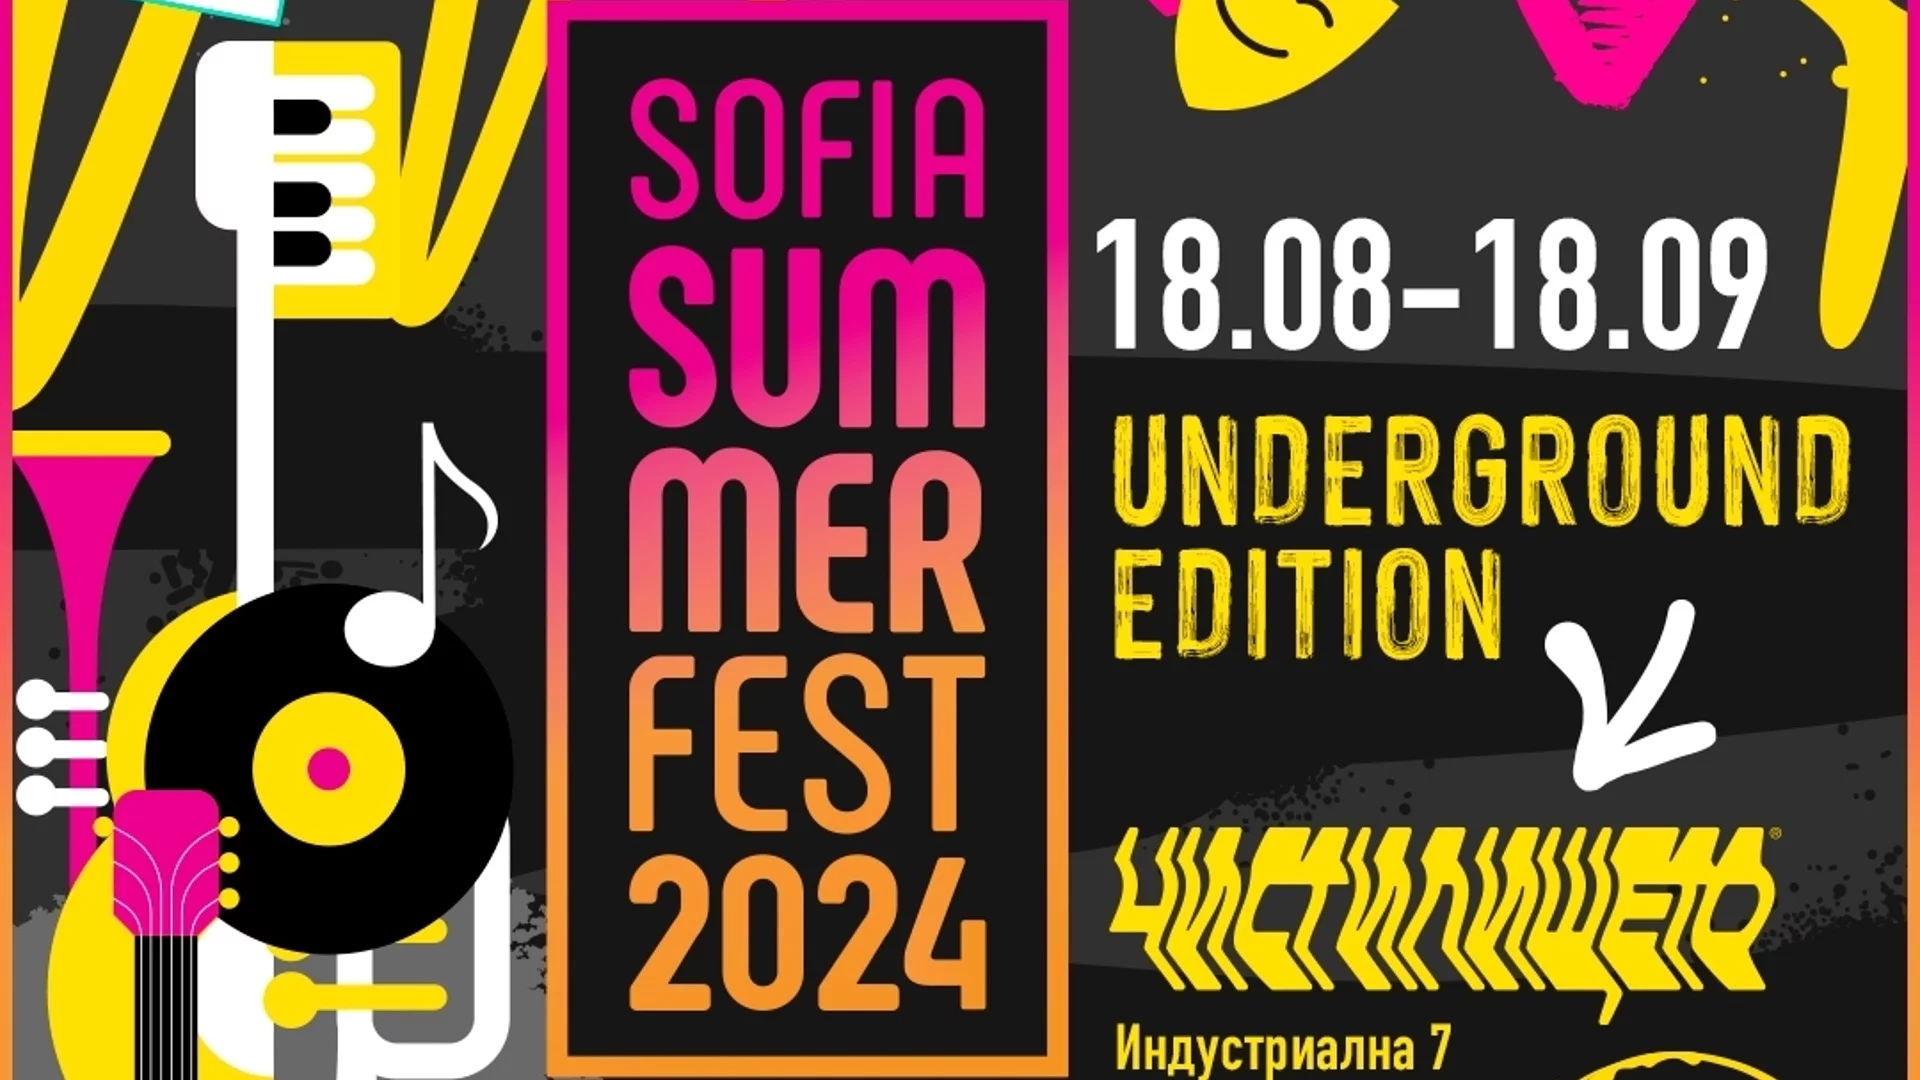 На 19 август започва Sofia Summer Fest Underground в "Чистилището"